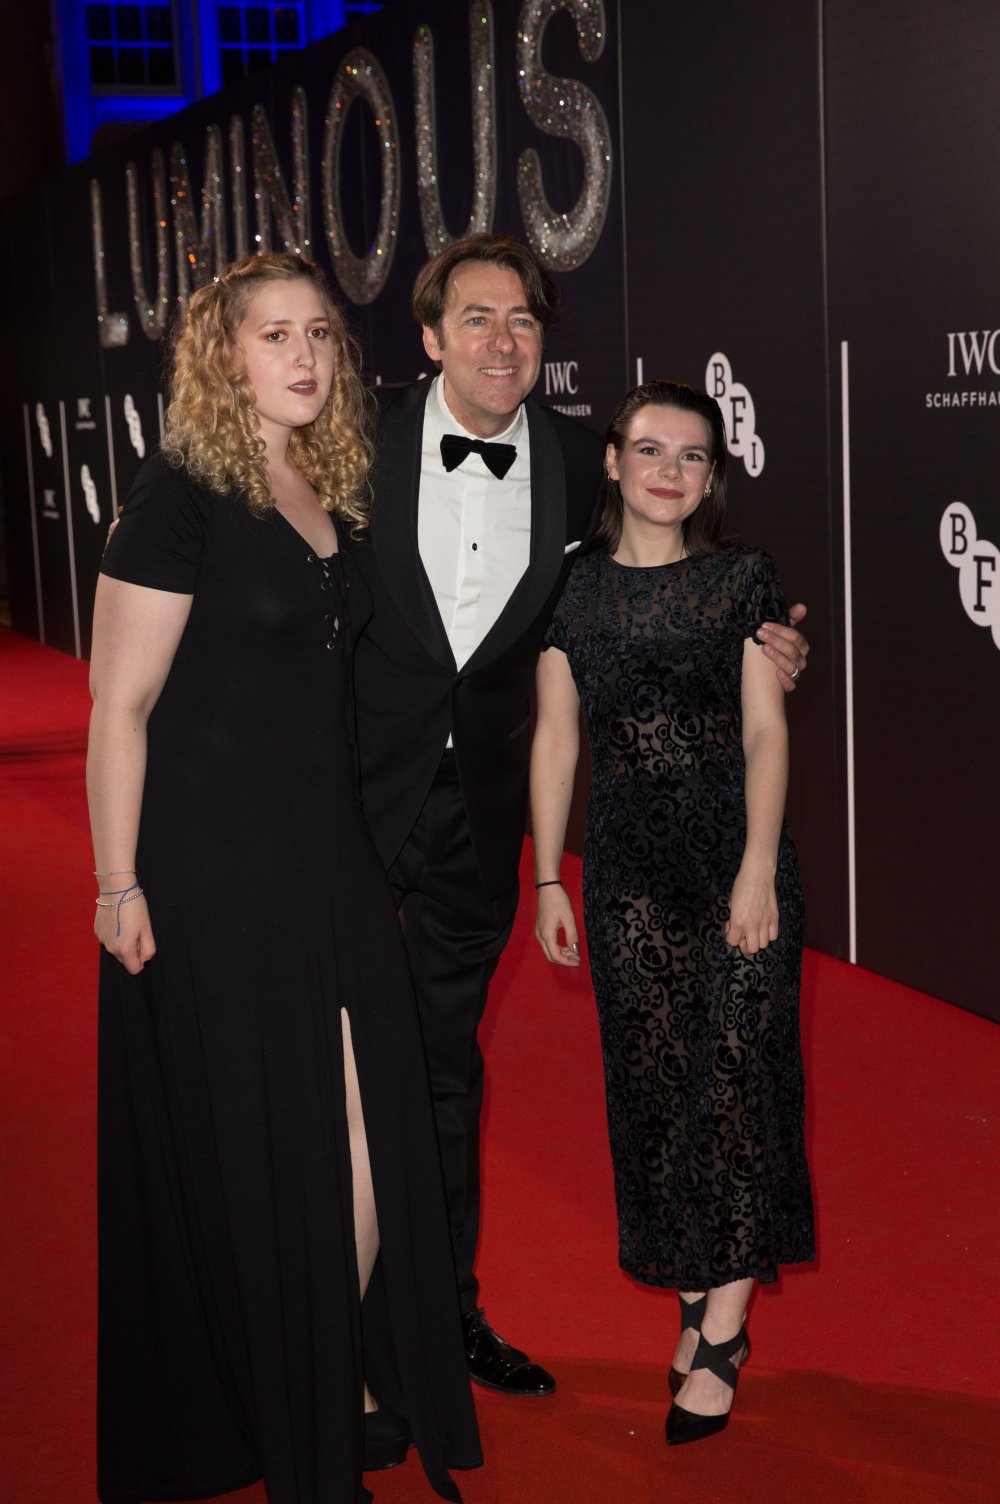 Jonathan Ross attends the BFI LUMINOUS gala 2015